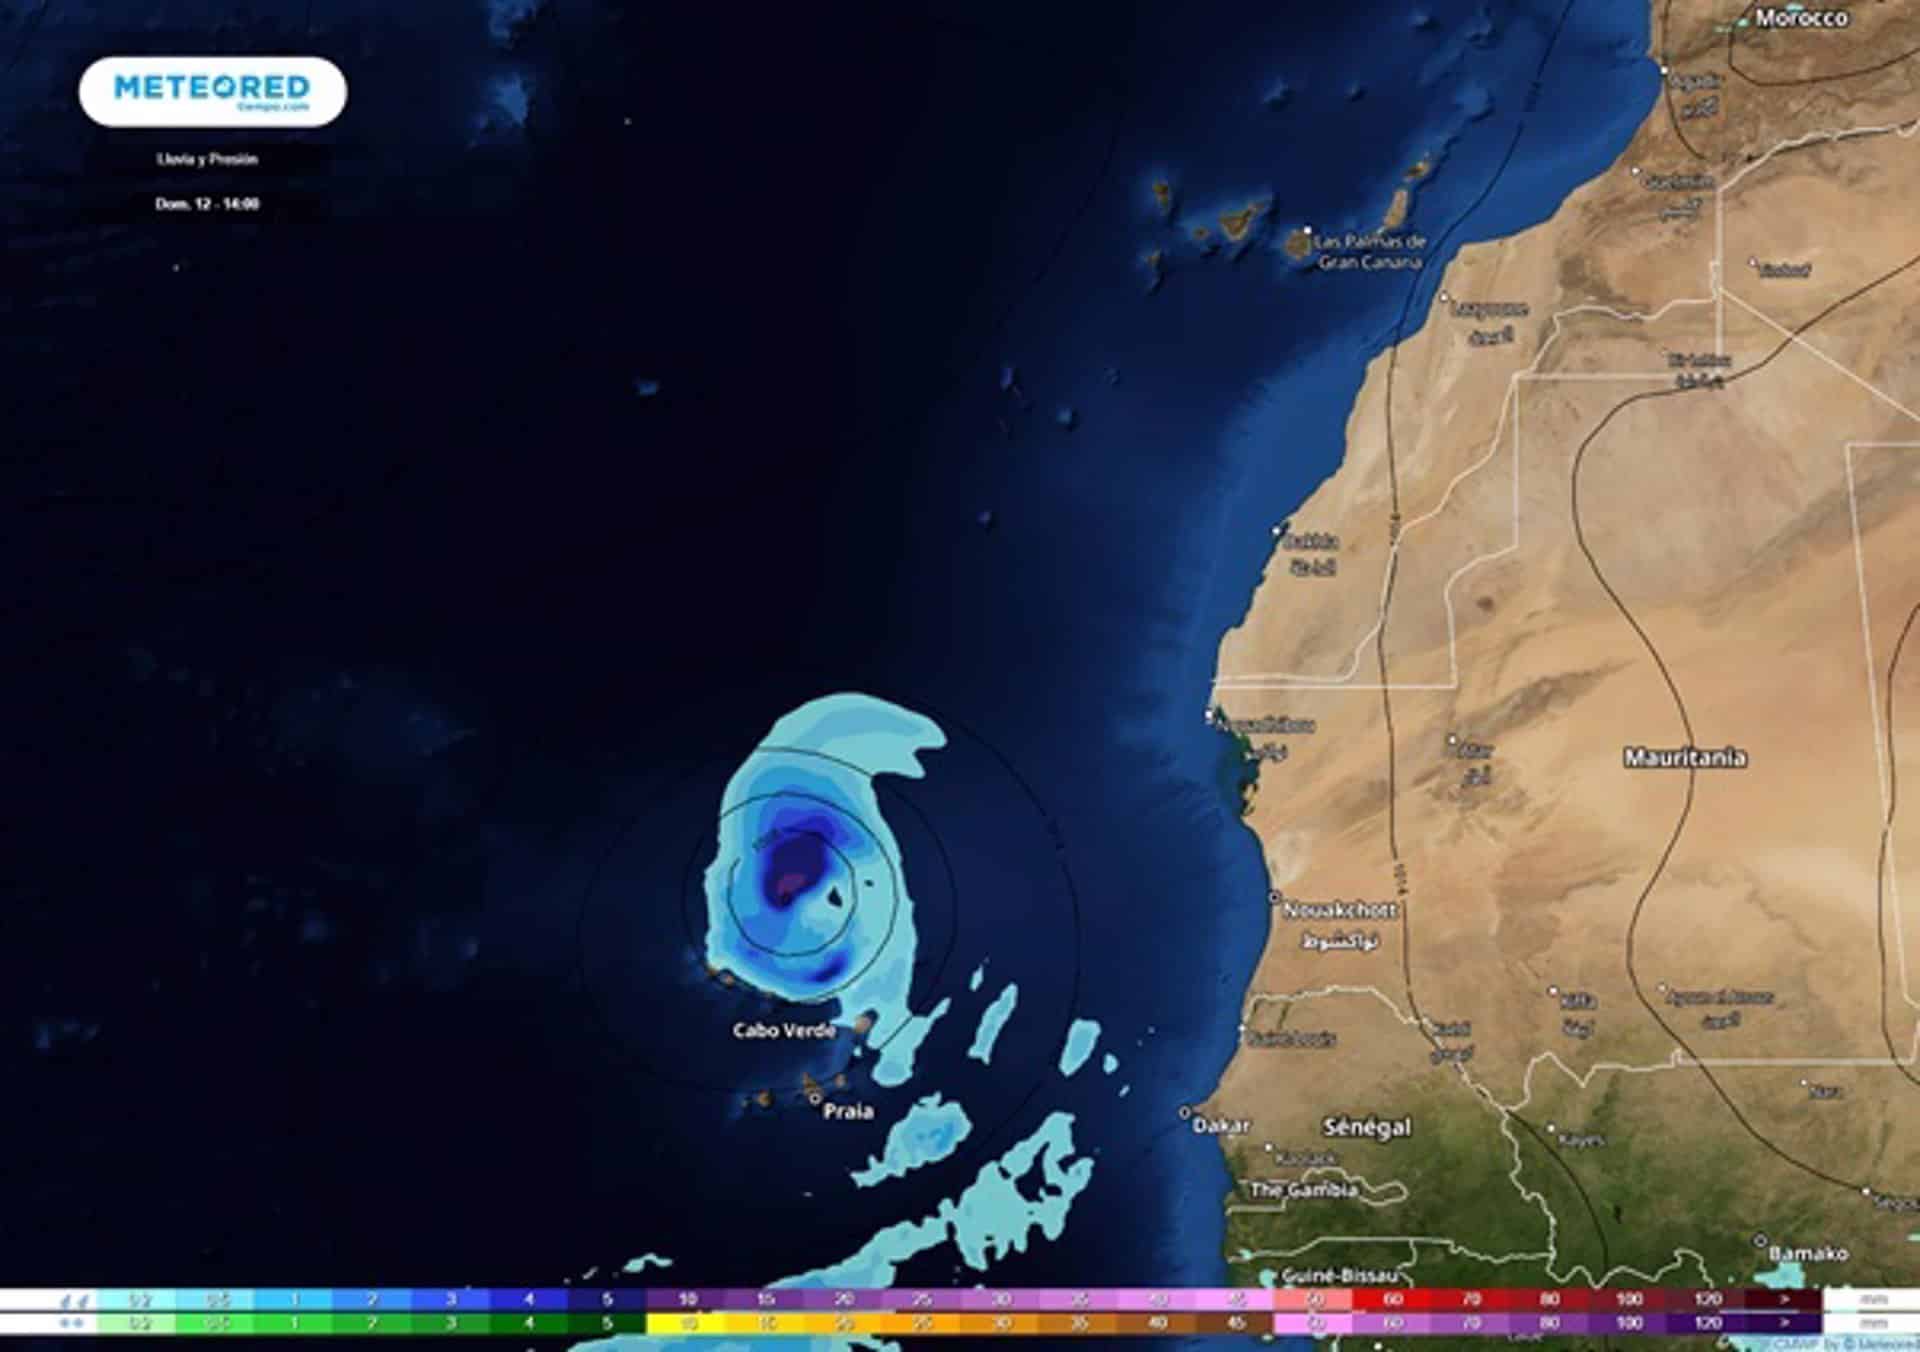 Posible ciclón tropical al norte de Cabo Verde y con tendencia a aproximarse ligeramente a Canarias (mapa con la previsión para el domingo 12 de septiembre)